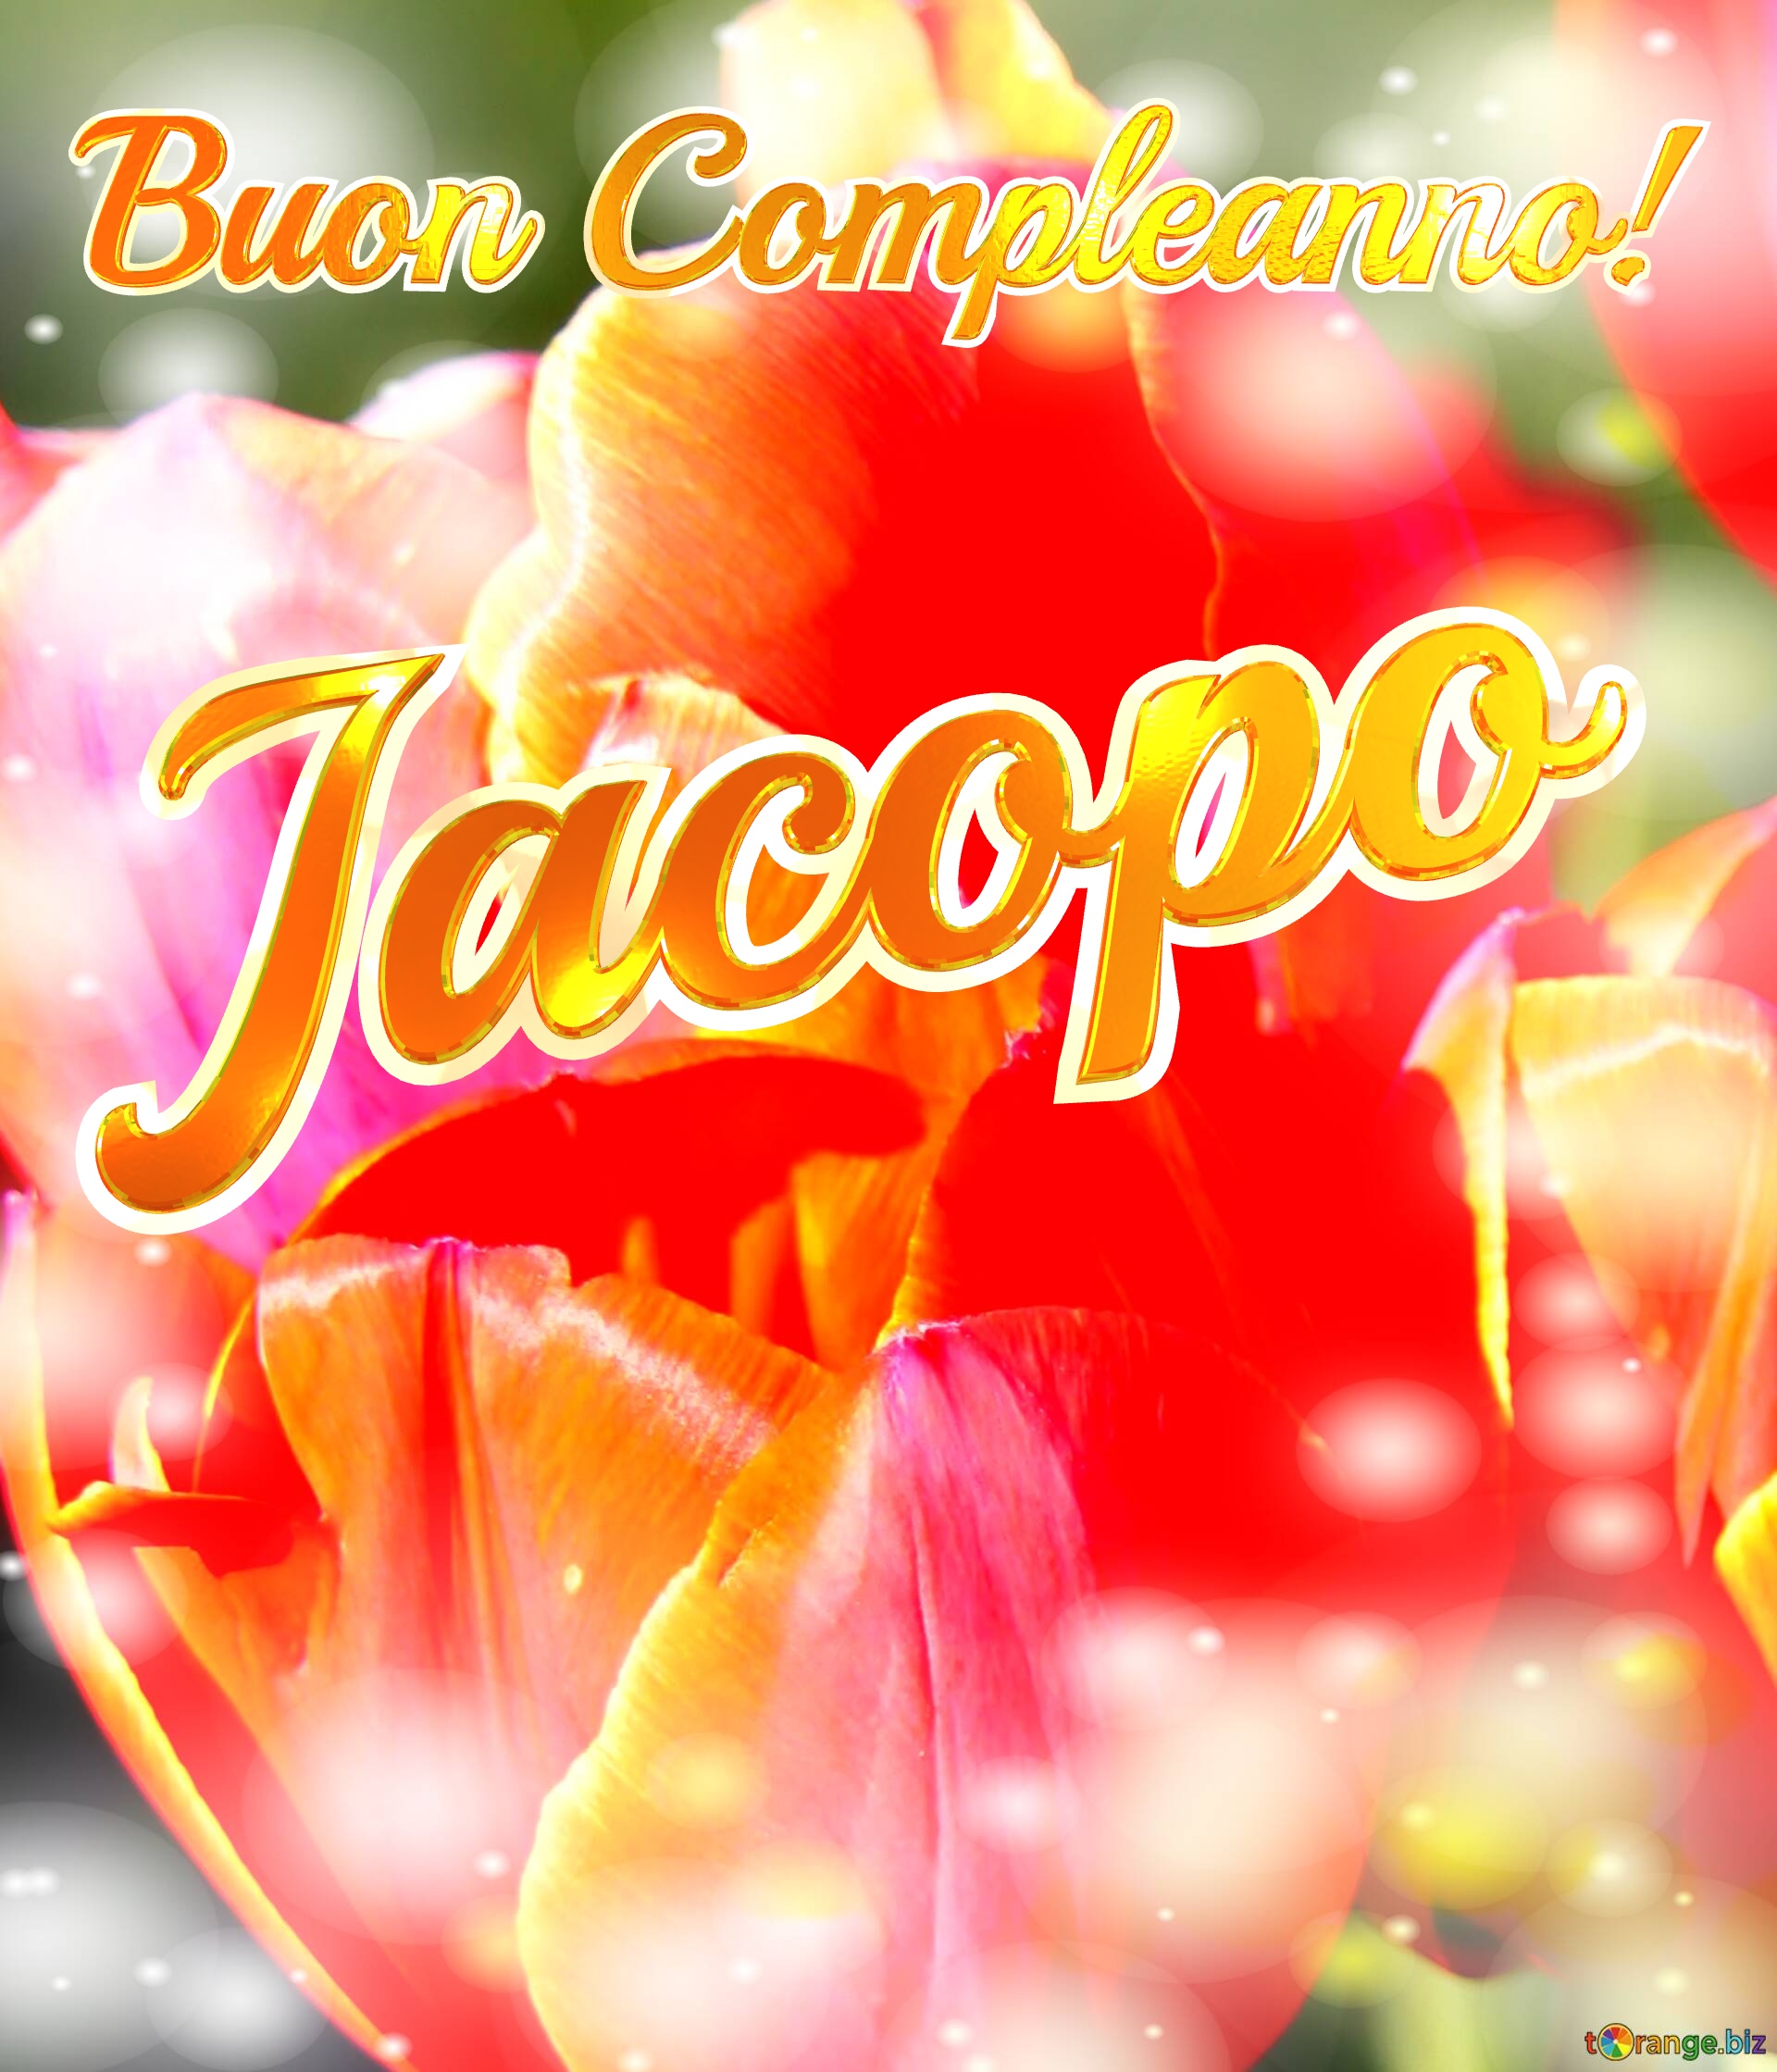 Buon Compleanno! Jacopo  Il tulipano è un simbolo di devozione, auguri per una vita devota e piena di amore. №0